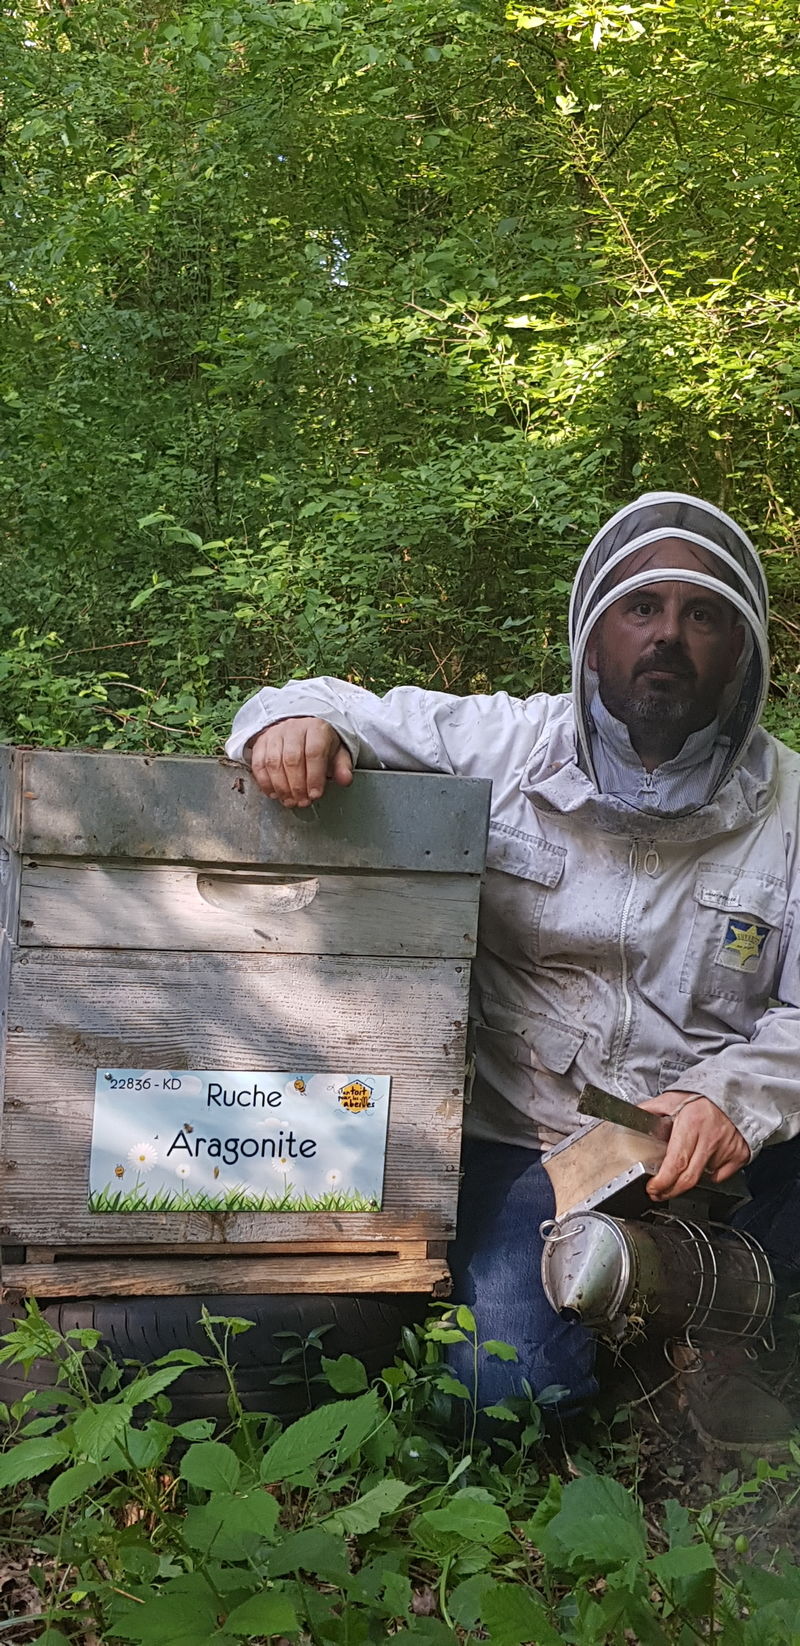 La ruche Aragonite